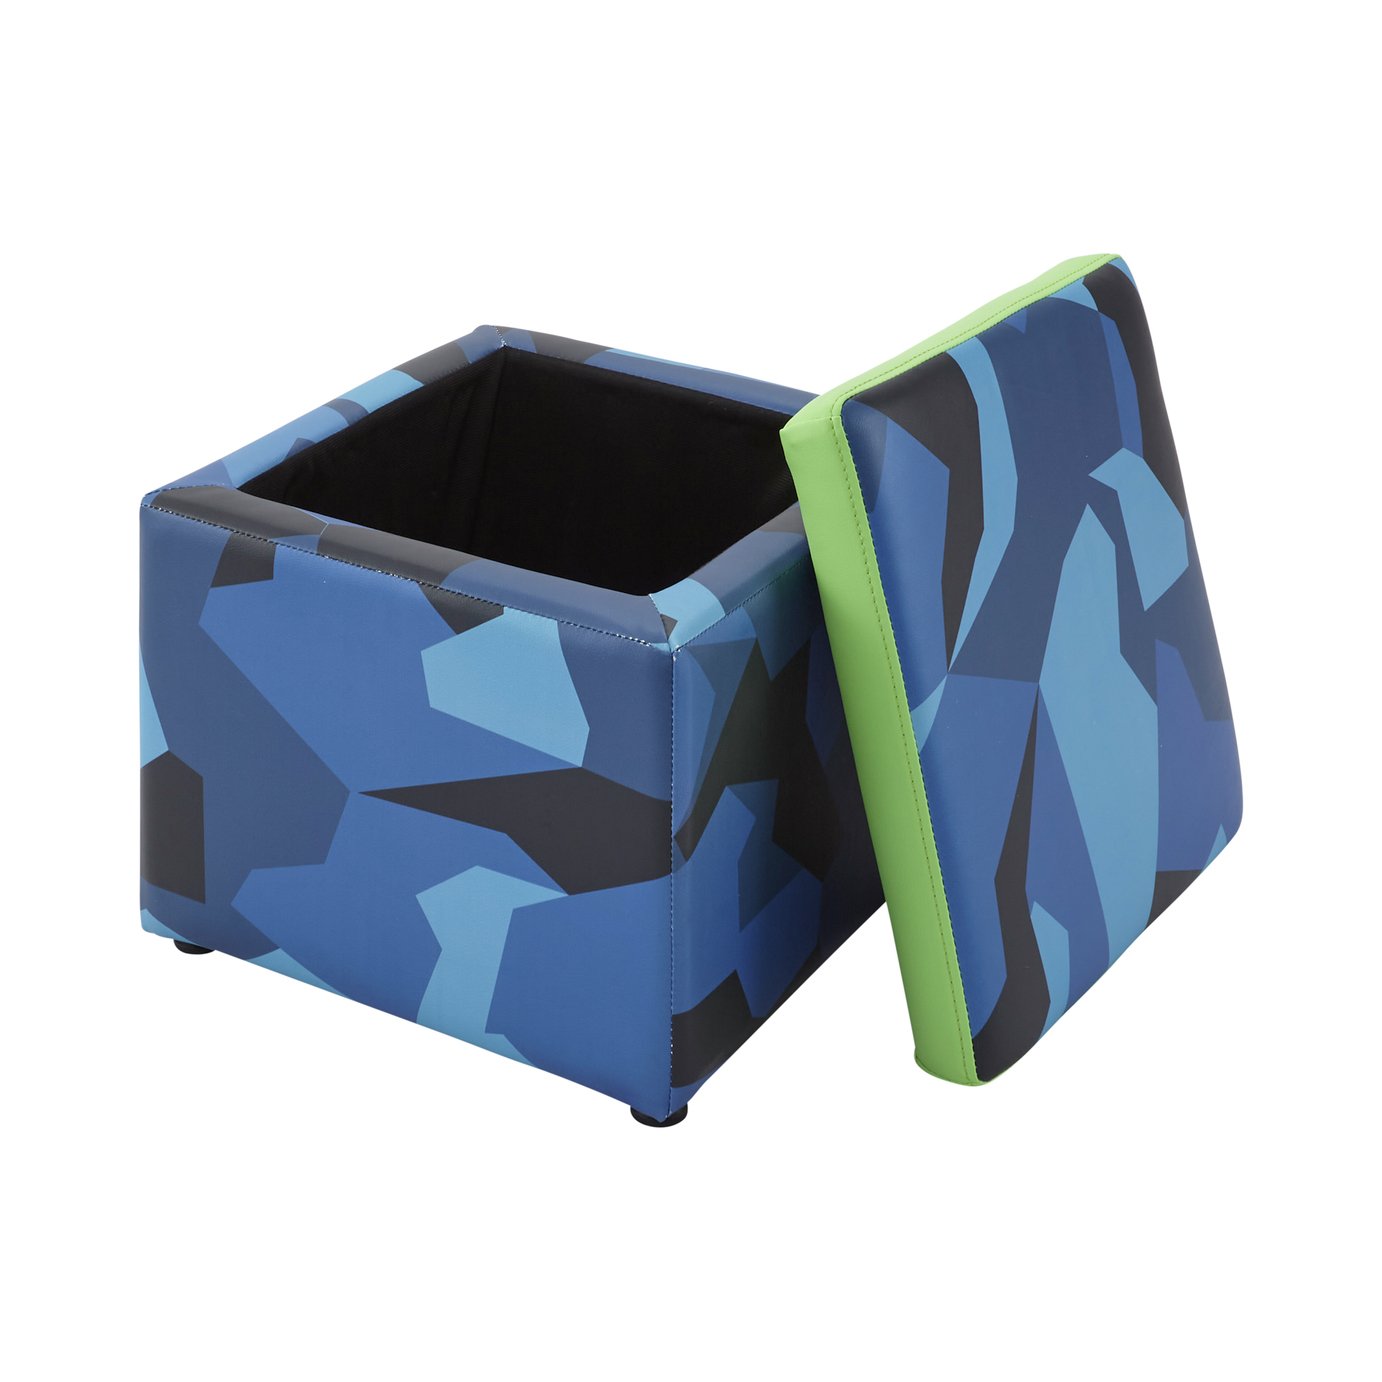 X Rocker Geo Camo Storage Cube Review